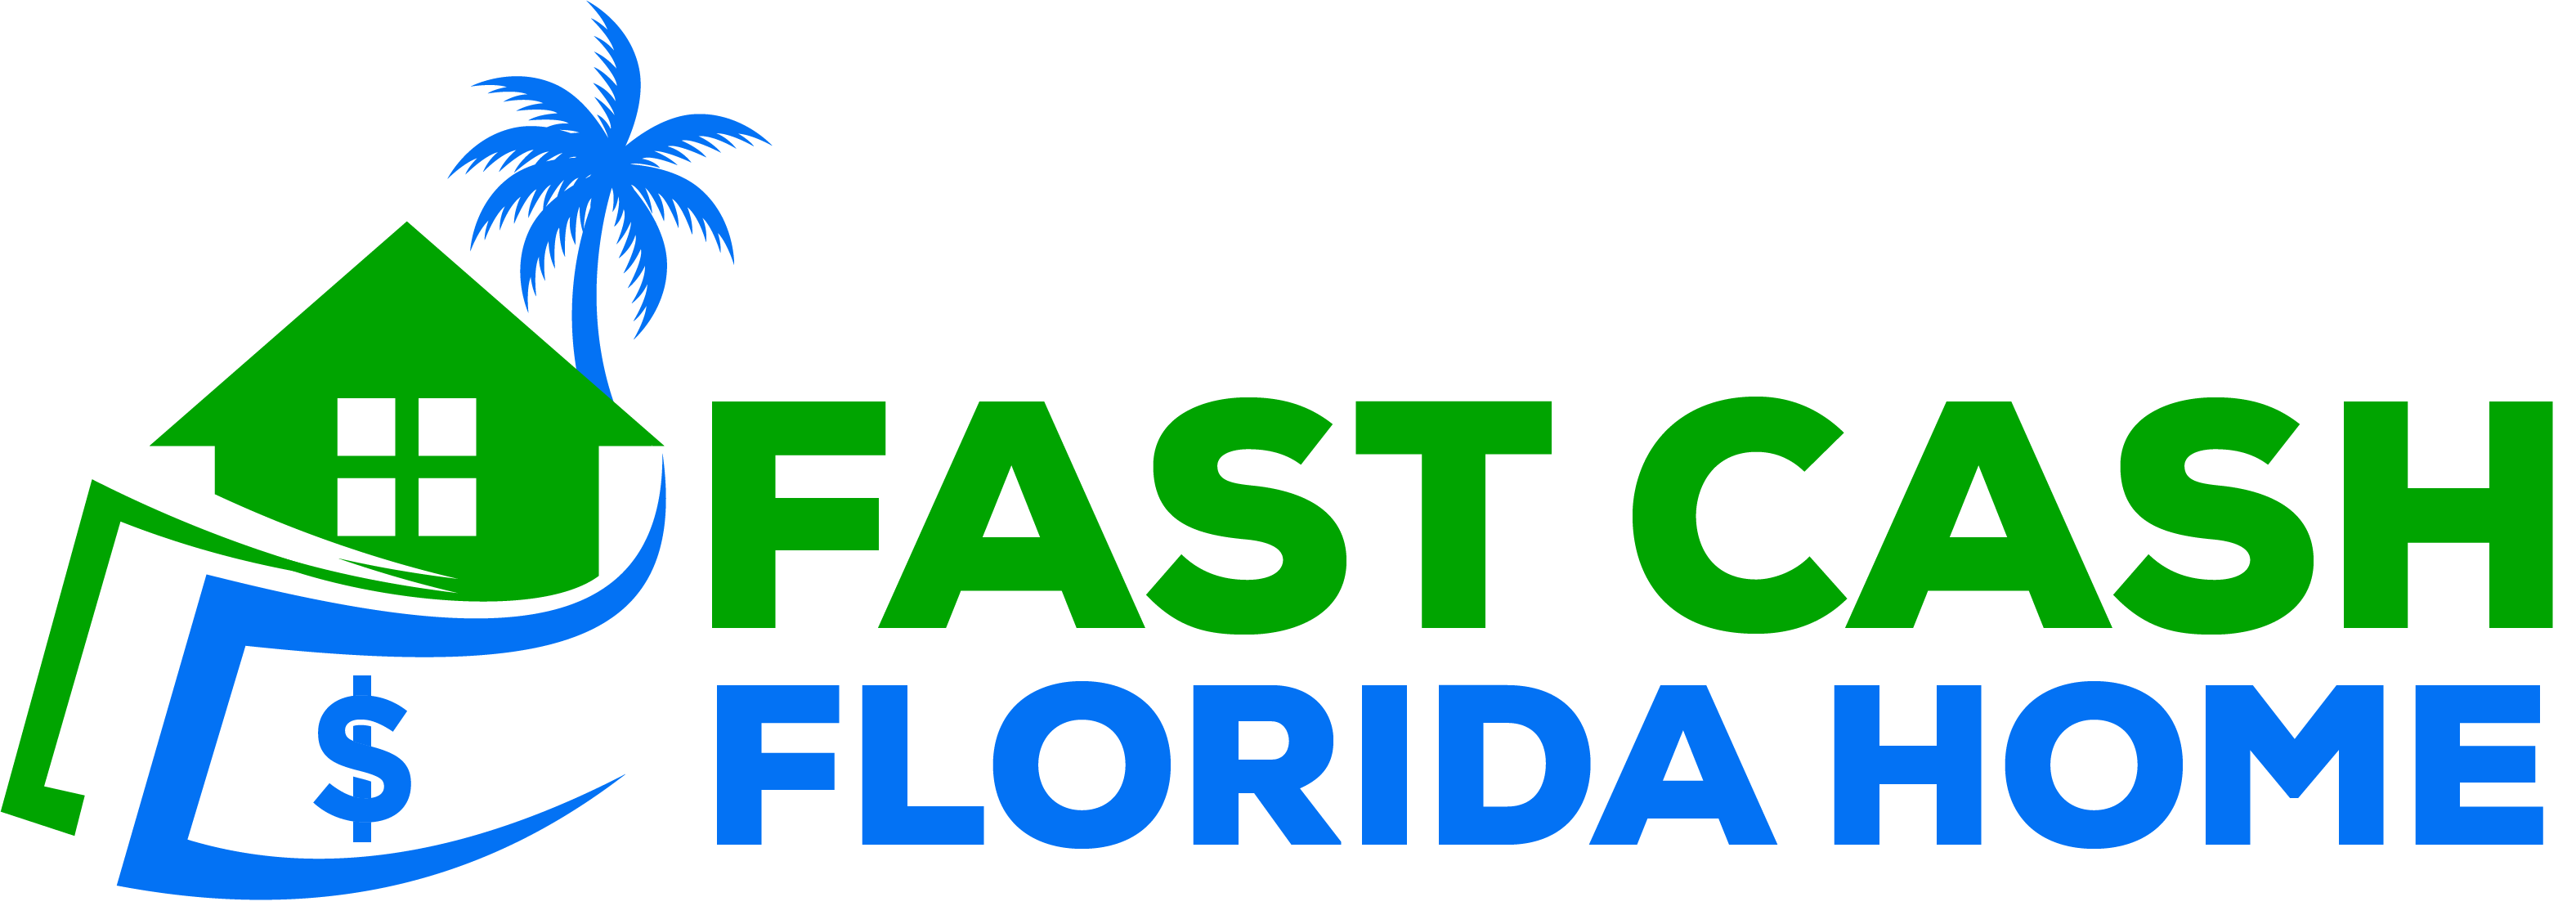 Fast Cash Florida Home logo